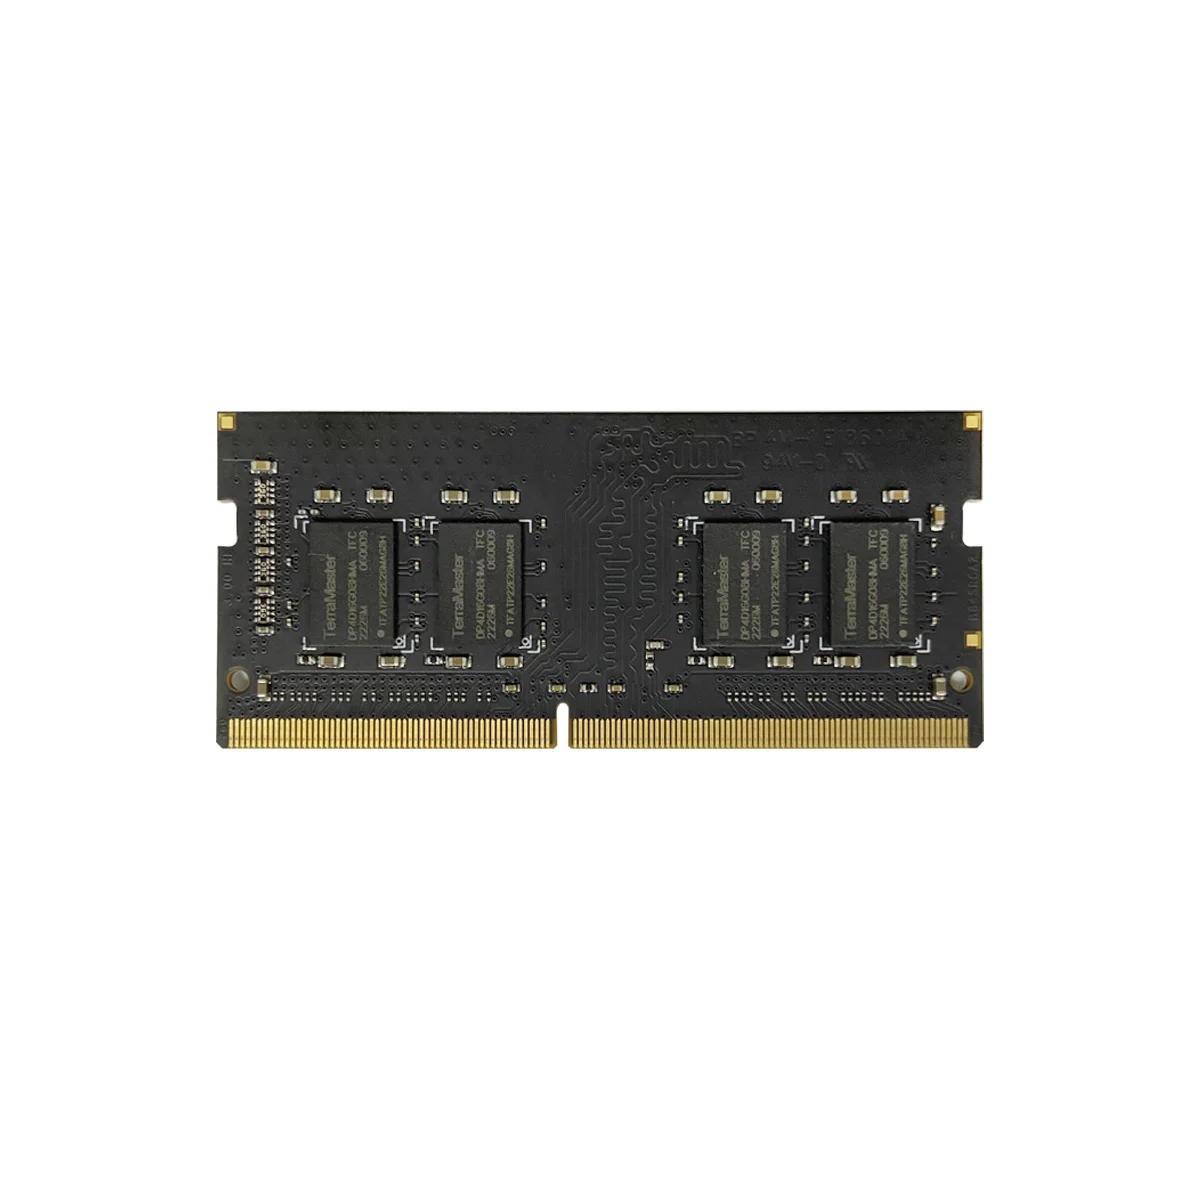 TER RAM ASTER 16G DDR4 RAM SO-DIMM, F2-223, F4-223, F2-423, F4-423, T6-423, _